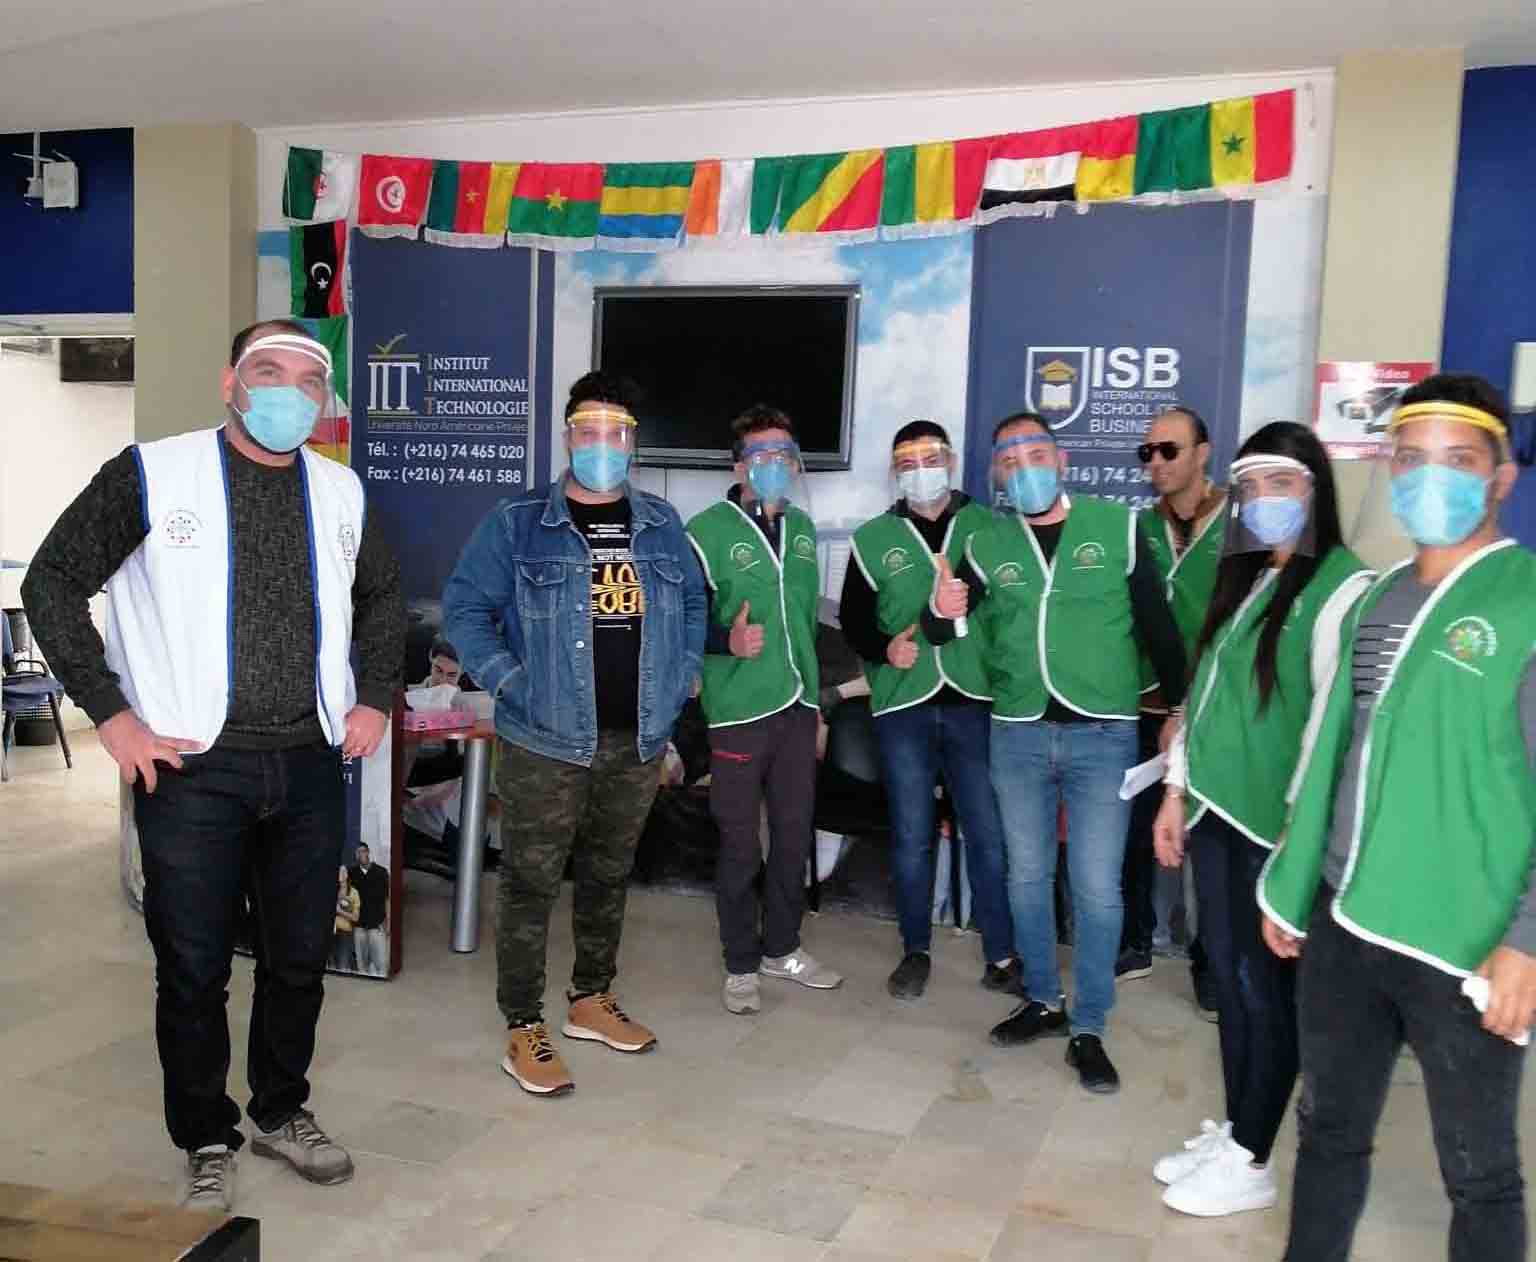 IIT et ISB se mobilisent contre Coronavirus: Une caravane de solidarité